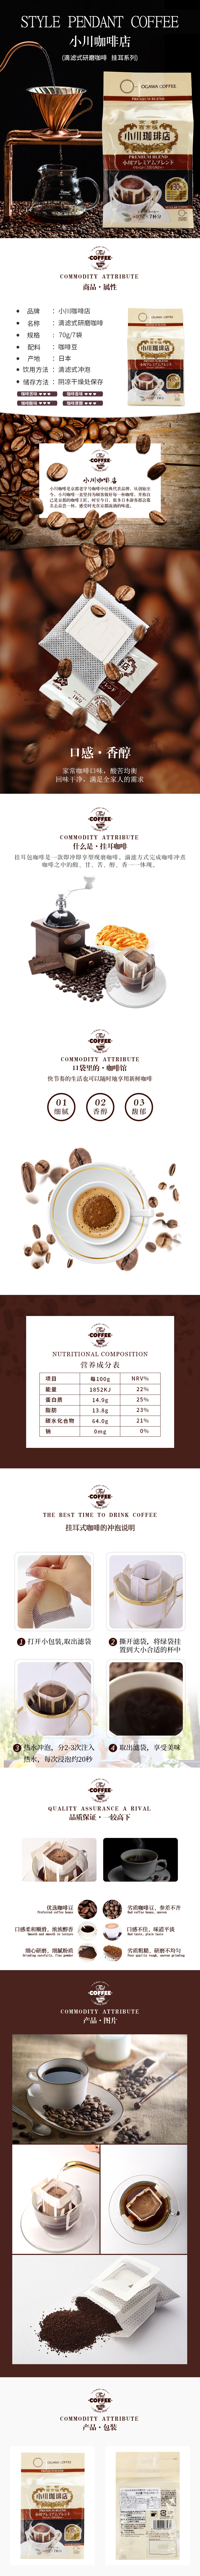 淘宝美工阿九意式挂耳咖啡咖啡粉咖啡豆食品饮品详情页设计作品